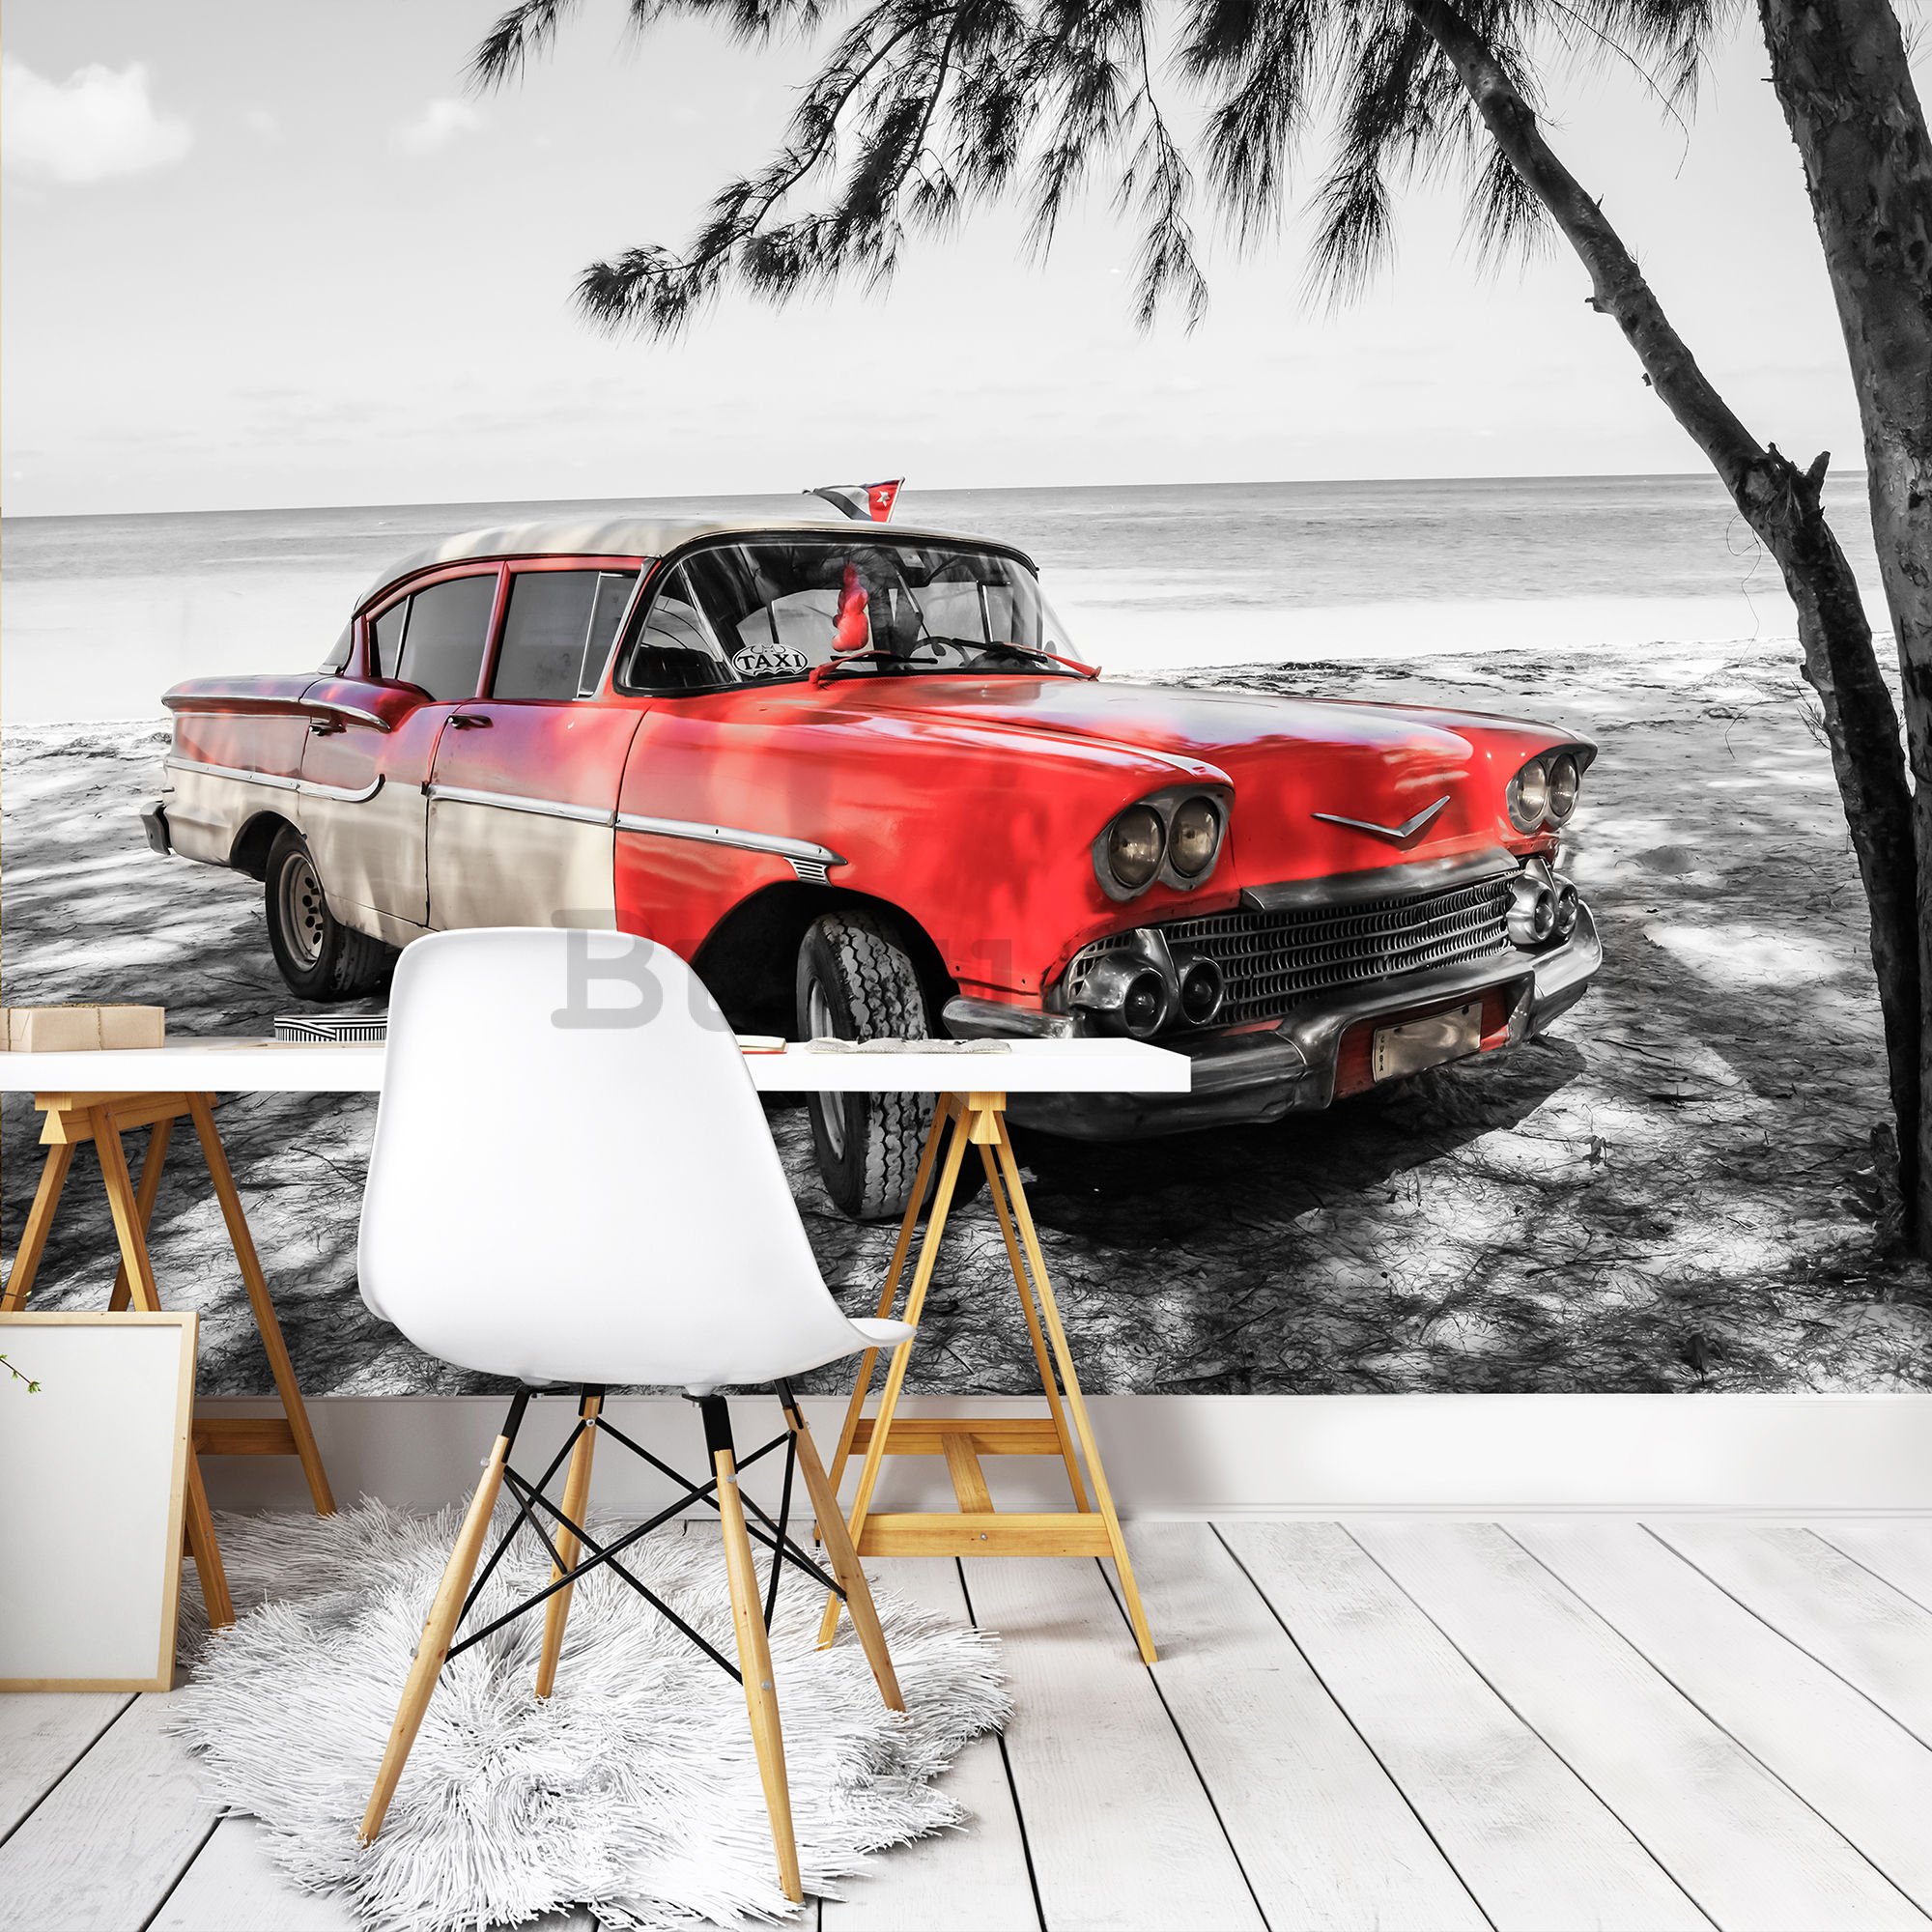 Vlies foto tapeta: Kuba crveni automobil uz more - 416x254 cm